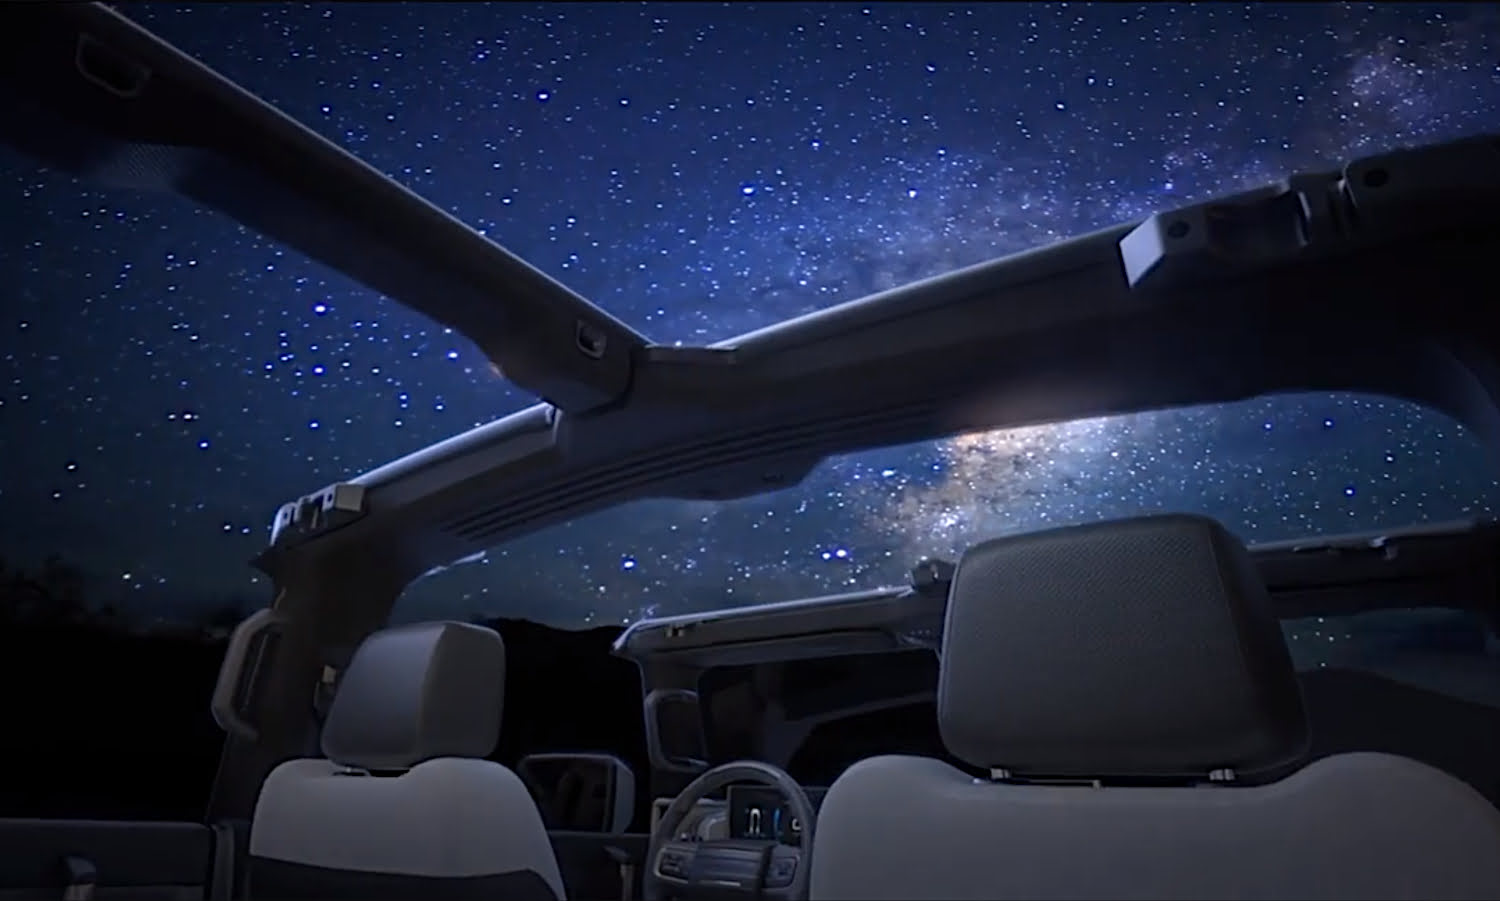 Hummer-EV-Pickup-Interior-001-Roof-Open-Night-Sky.jpg